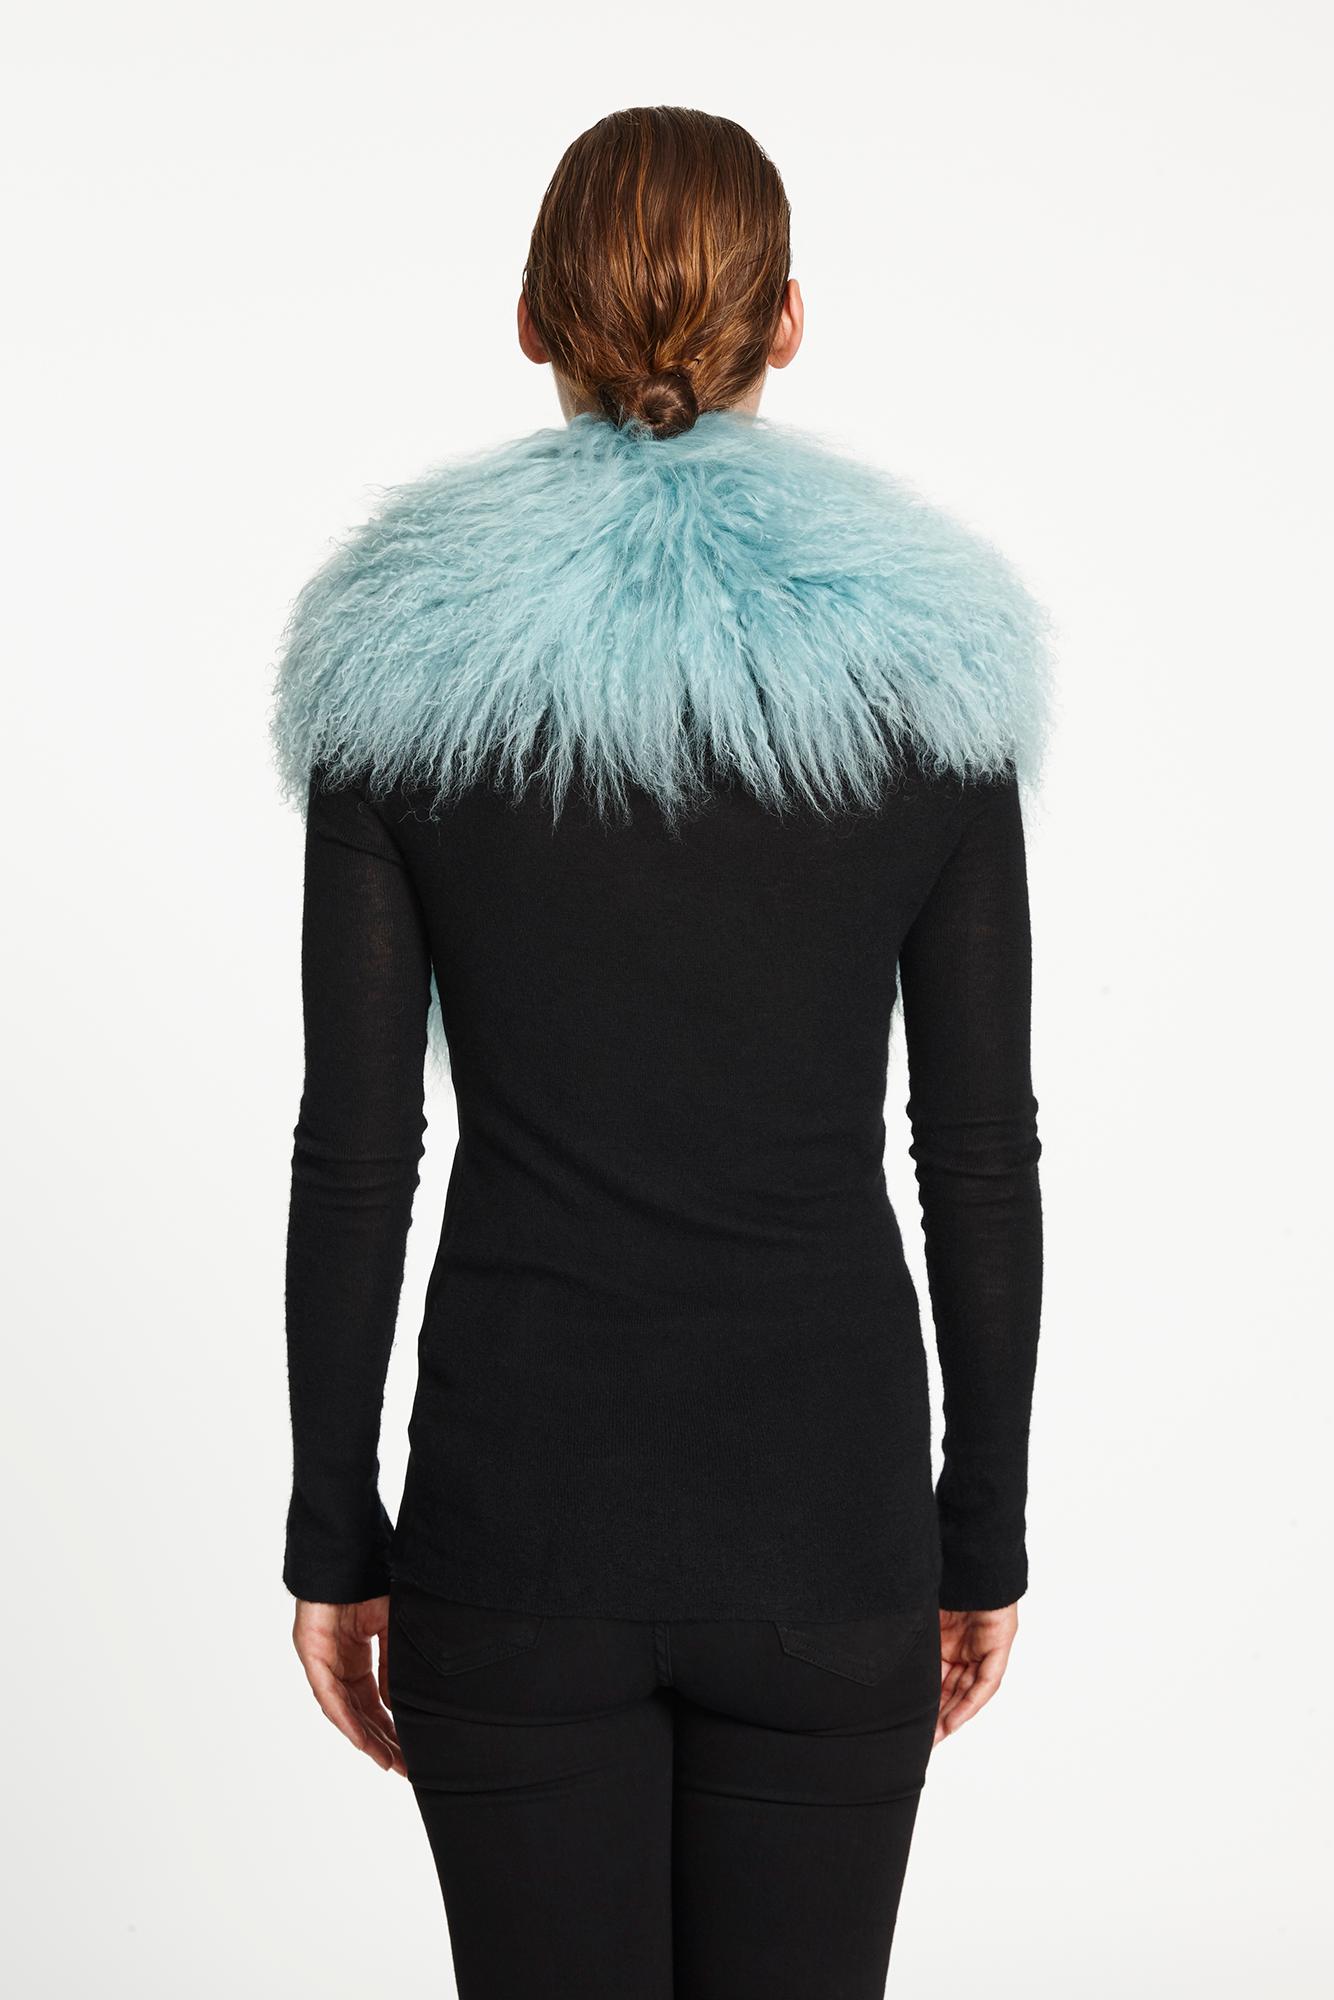 Verheyen London Shawl Collar in Aquamarine Blue Mongolian Lamb Fur  3